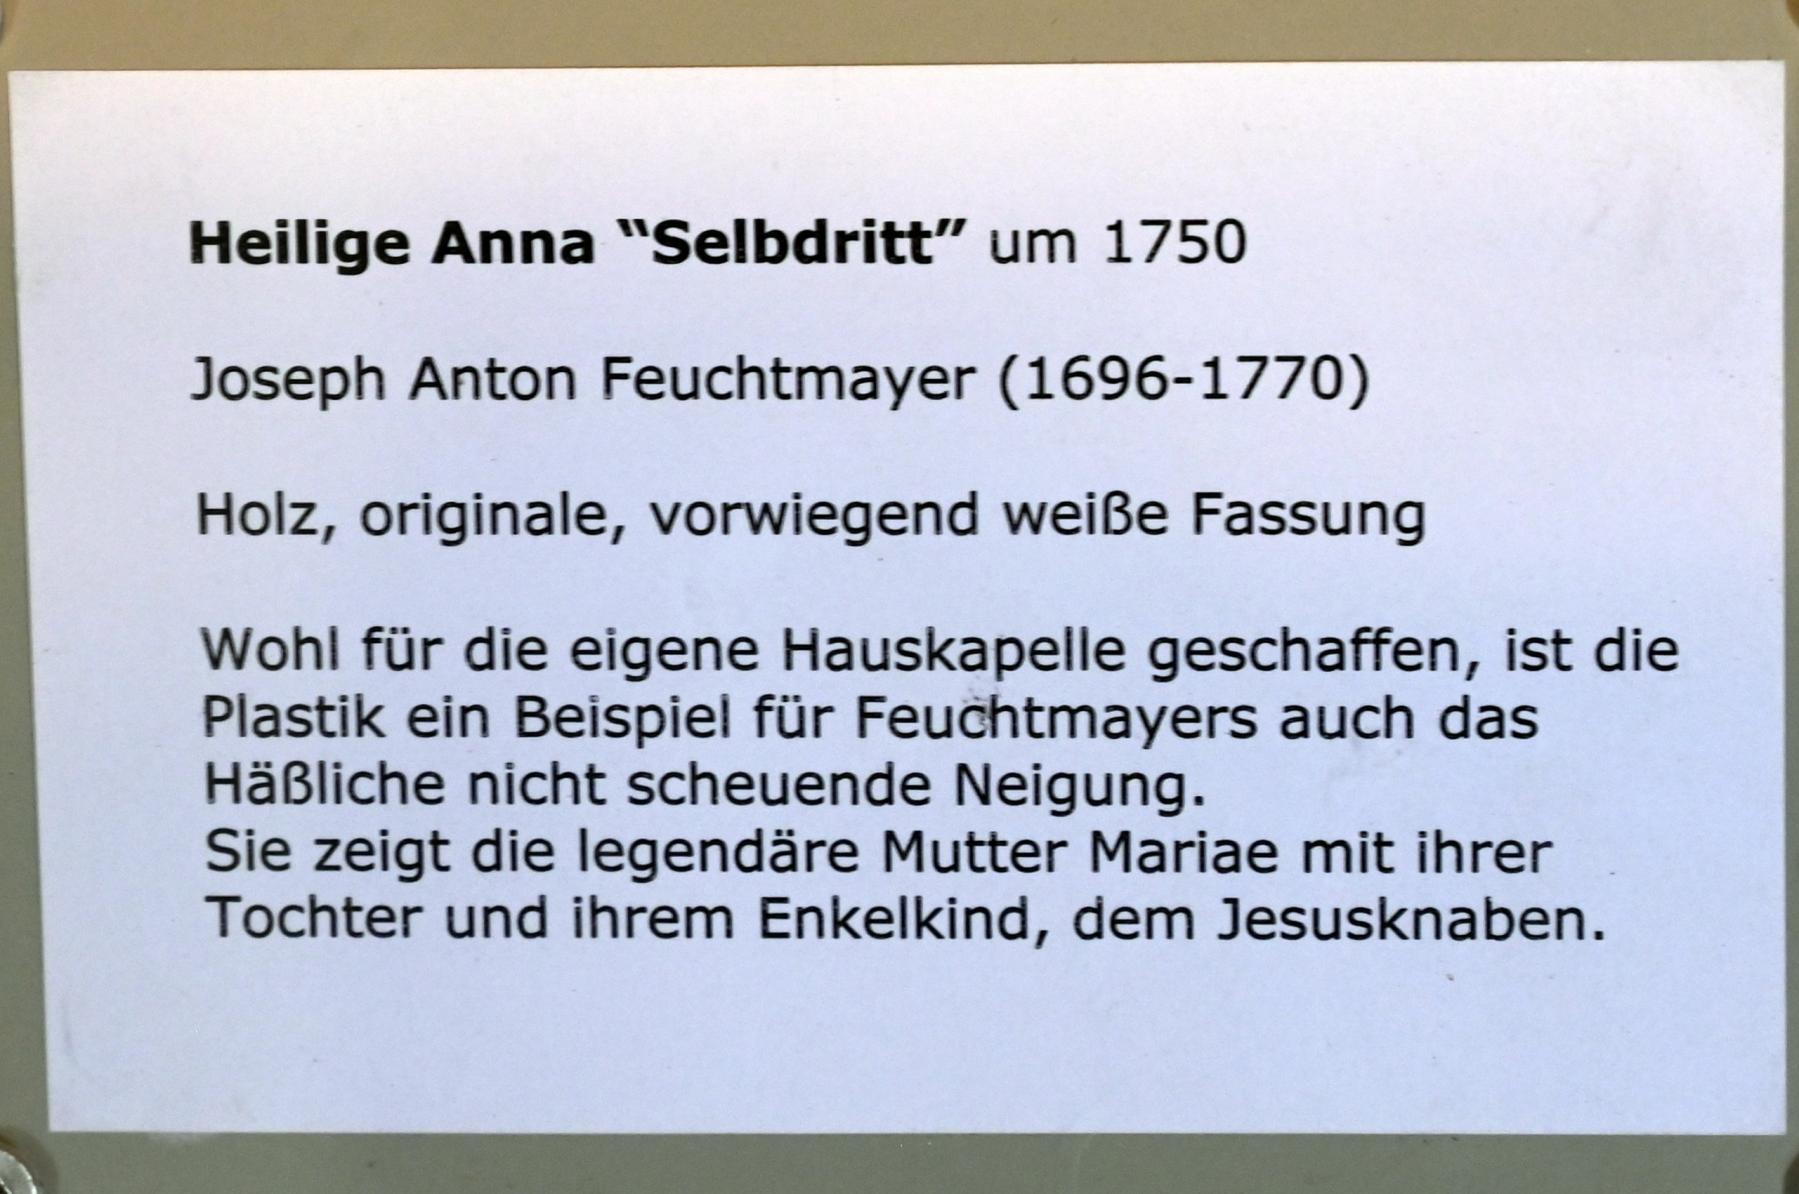 Joseph Anton Feuchtmayer (1718–1770), Heilige Anna "Selbdritt", Überlingen, Städtisches Museum, Kleiner Barocksaal, um 1750, Bild 4/4